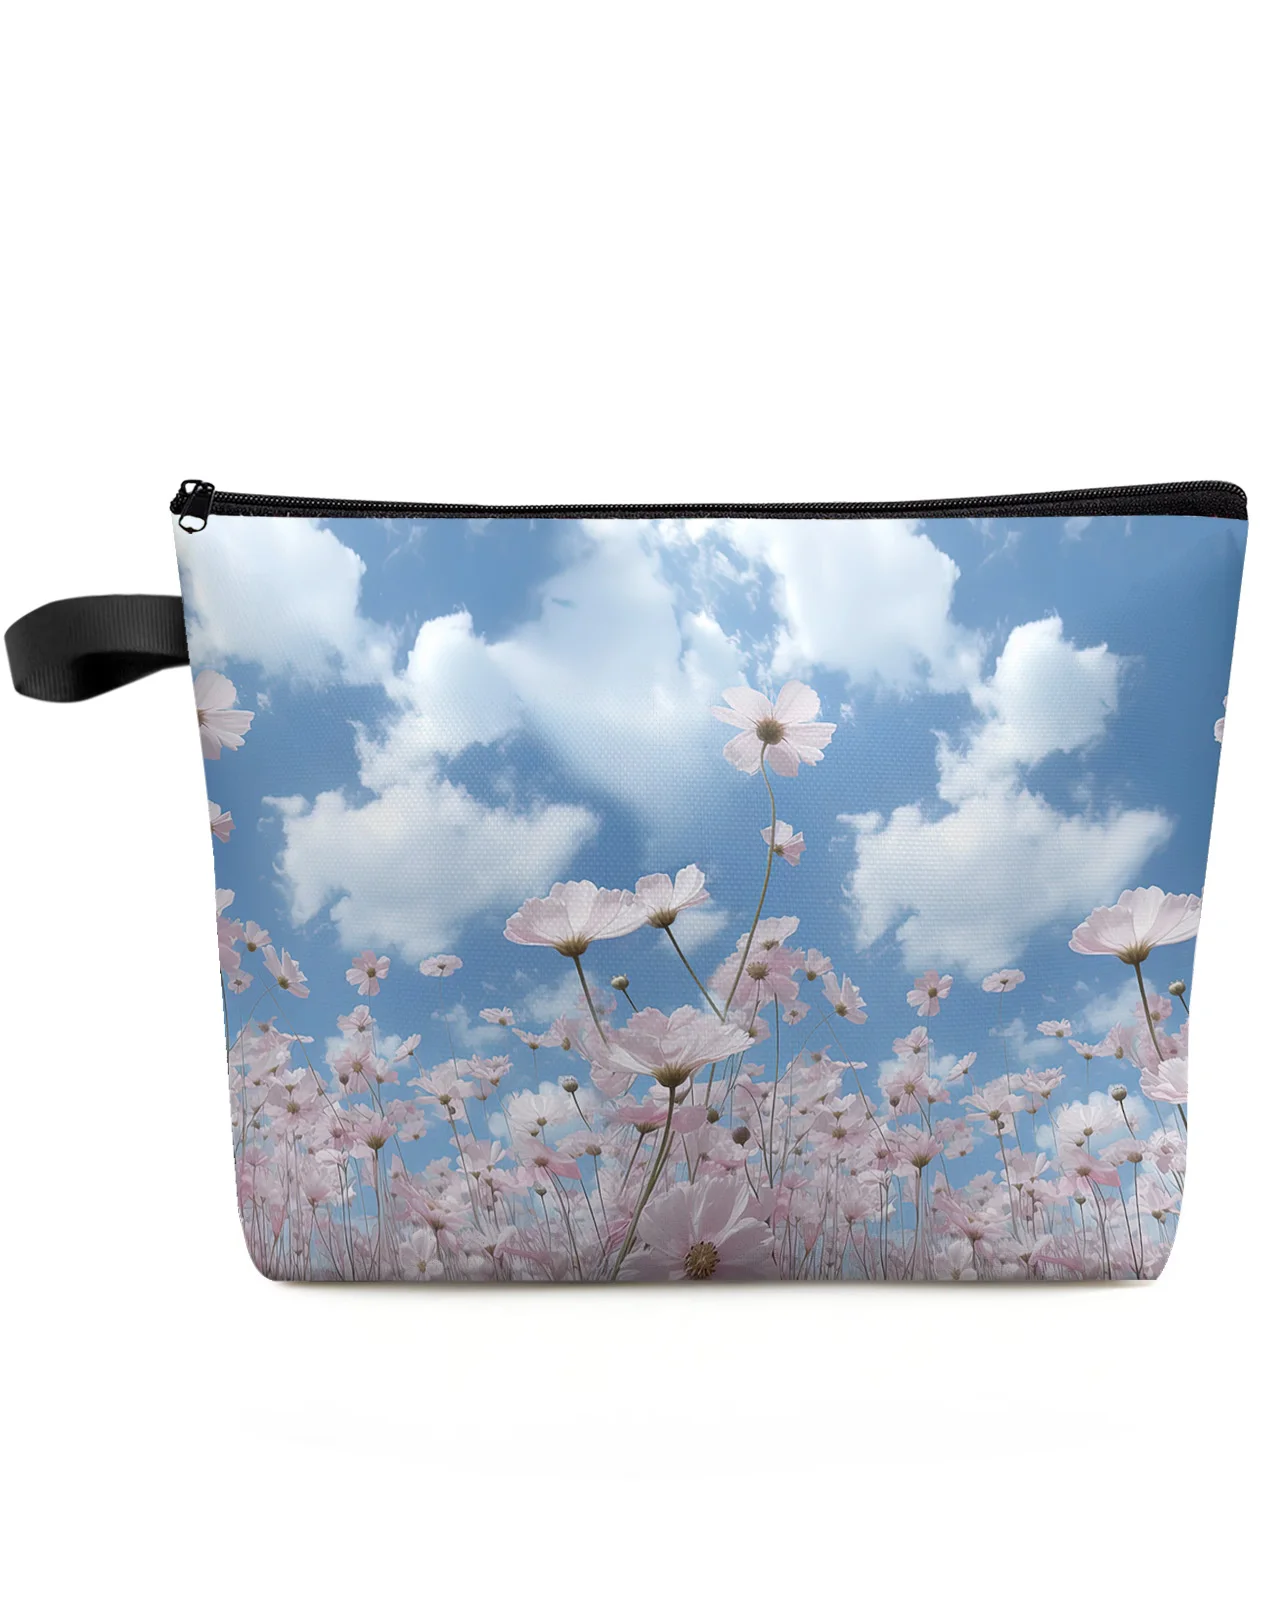 Голубое небо Облака Цветы Косметичка для макияжа, сумки для путешествий, женские косметические сумки, Органайзер для туалета, пенал для хранения детей